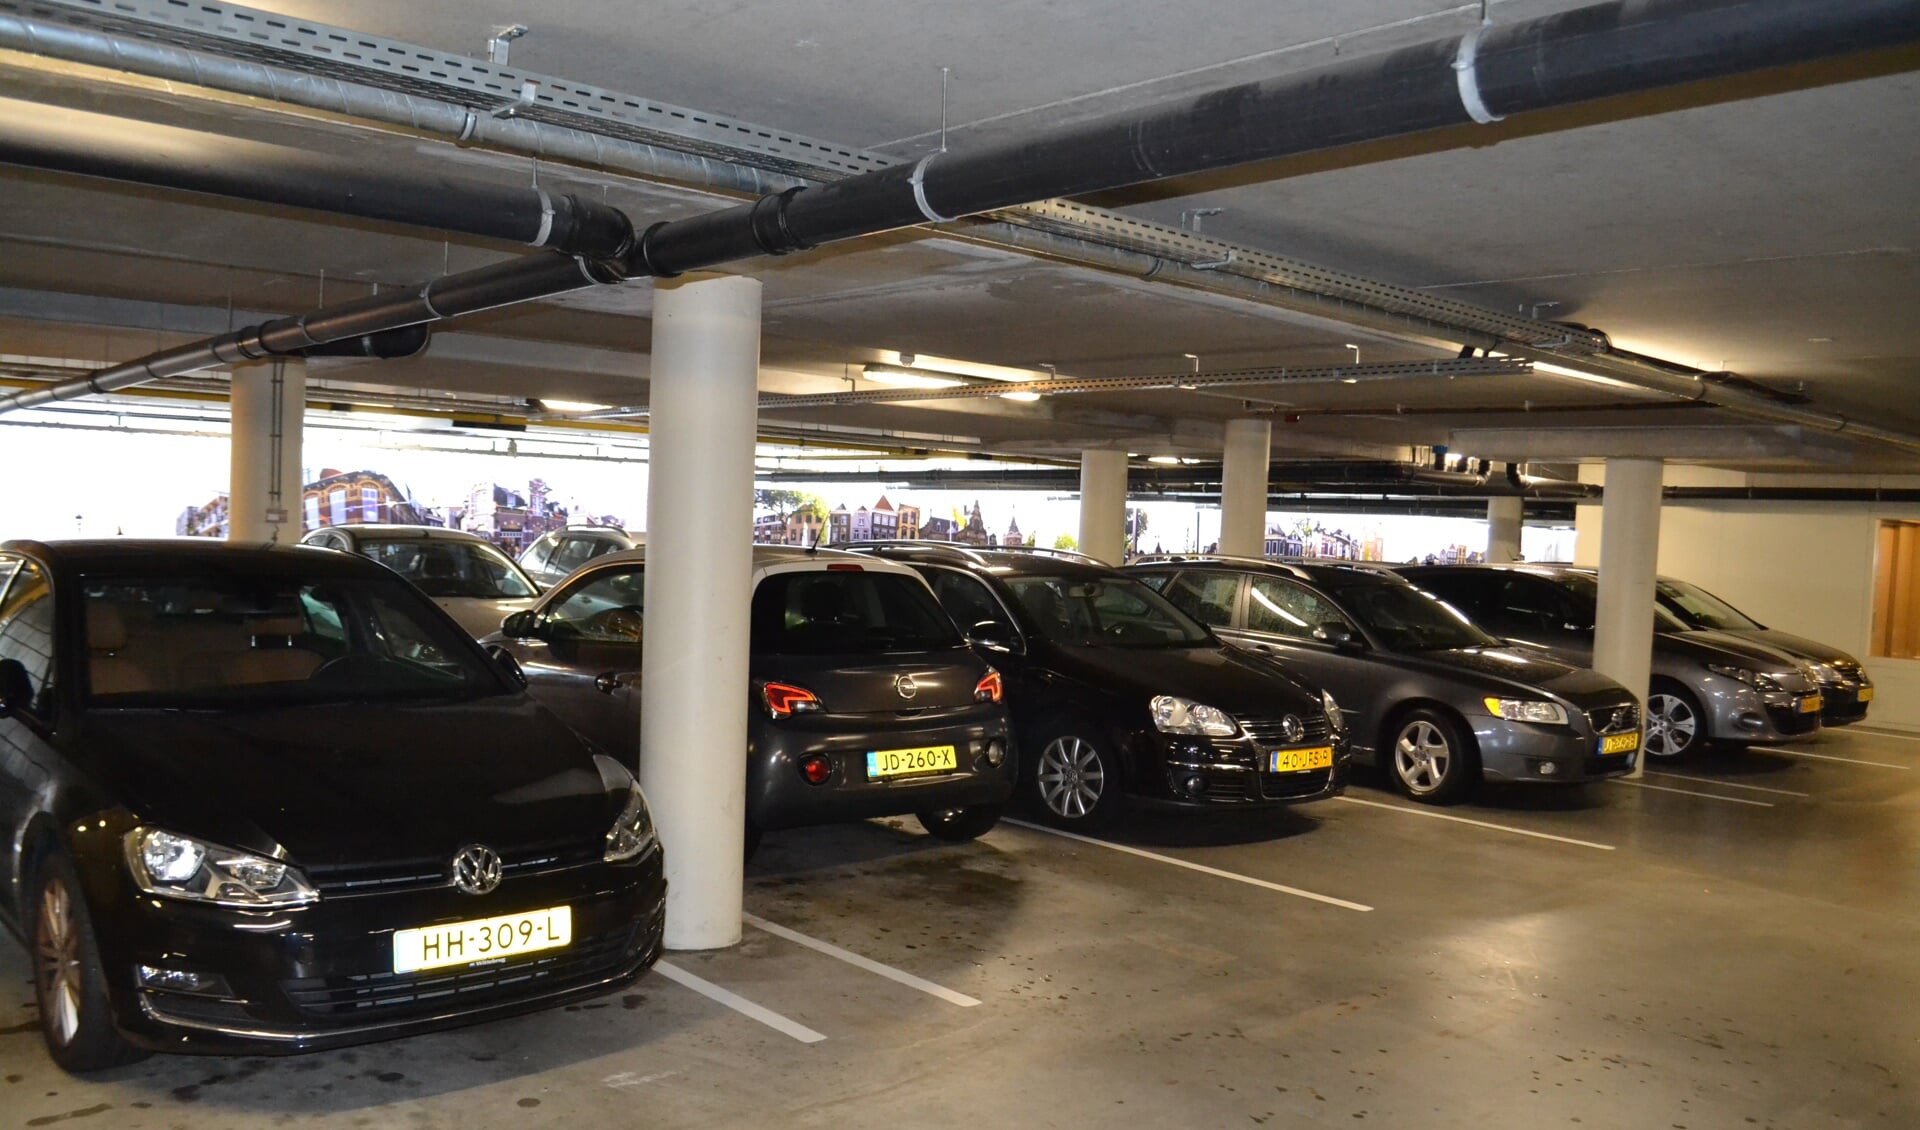 Uit cijfers blijkt dat er in de parkeergarage Damplein ruimte is voor extra ontheffingen voor direct omwonenden van de garage (foto: Inge Koot).